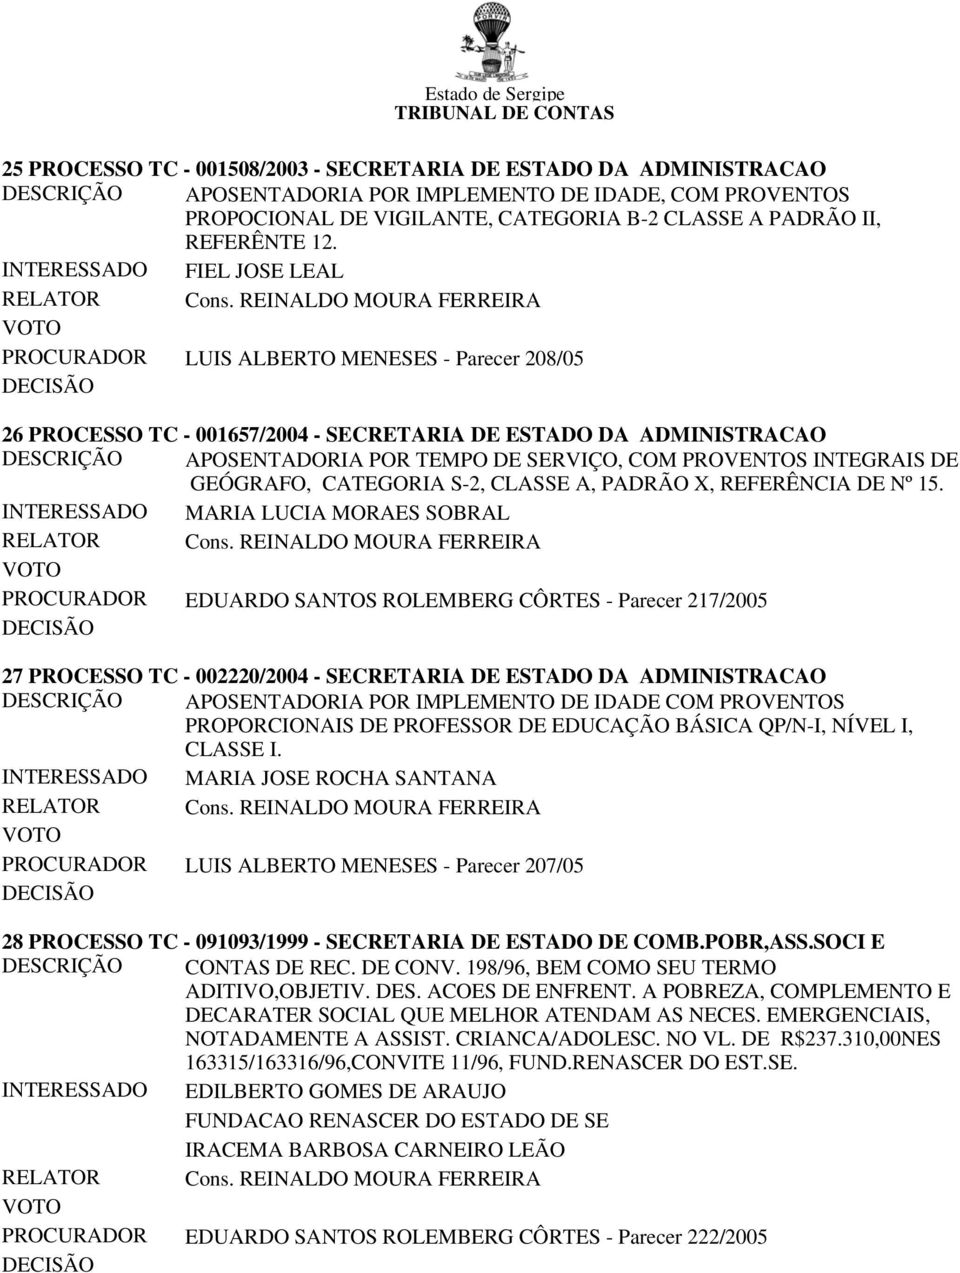 INTERESSADO FIEL JOSE LEAL PROCURADOR LUIS ALBERTO MENESES - Parecer 208/05 26 PROCESSO TC - 001657/2004 - SECRETARIA DE ESTADO DA ADMINISTRACAO DESCRIÇÃO APOSENTADORIA POR TEMPO DE SERVIÇO, COM